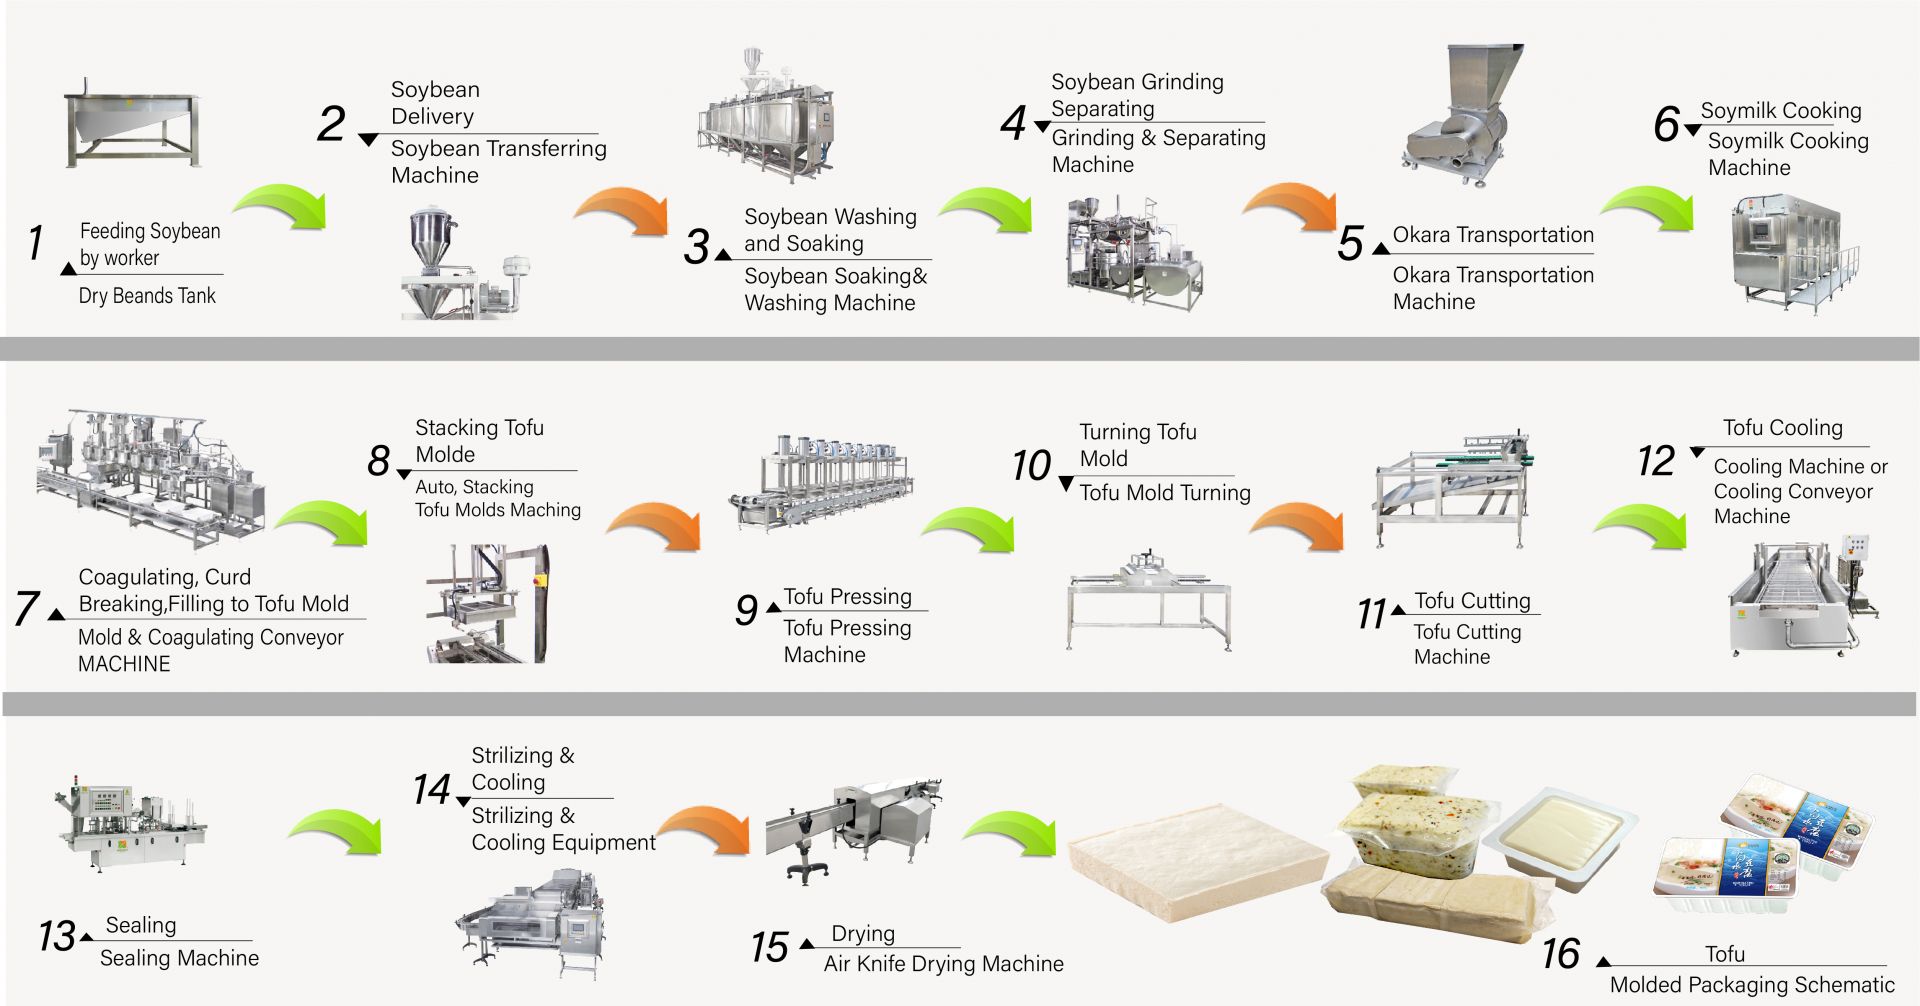 Cómo hacer tofu, producción de tofu, fabricación de tofu, proceso de fabricación de tofu, fabricación de tofu, proceso de fabricación de tofu, proceso de tofu, método de procesamiento de tofu, proceso de procesamiento de tofu, producción de tofu, diagrama de flujo de producción de tofu, proceso de producción de tofu, proceso de producción de tofu, máquina automática de tofu, máquina automática para hacer tofu, máquina comercial de tofu, fabricante de tofu fácil, máquina de tofu frito, fabricación de tofu industrial, equipo para alimentos de soja, máquina de carne de soja, máquina de hacer leche de soja y tofu, equipo de tofu, fábrica de tofu, máquina de tofu, máquina de tofu en venta, fabricante de máquinas de tofu, fabricante de máquinas de tofu, precio de máquinas de tofu, maquinaria de tofu, Maquinaria y equipo para tofu, fabricante de tofu, máquina fabricante de tofu, fabricación de tofu, equipo para fabricación de tofu, máquina para fabricación de tofu, precio de máquina para fabricación de tofu, fabricantes de tofu, fabricación de tofu, equipo para fabricación de tofu, Fábrica de fabricación de tofu, planta de fabricación de tofu, equipo de producción de tofu, fábrica de producción de tofu, línea de producción de tofu, precio de la línea de producción de tofu, fabricante de tofu, máquina de carne vegana, línea de producción de carne vegana, maquinaria y equipo de tofu de verduras